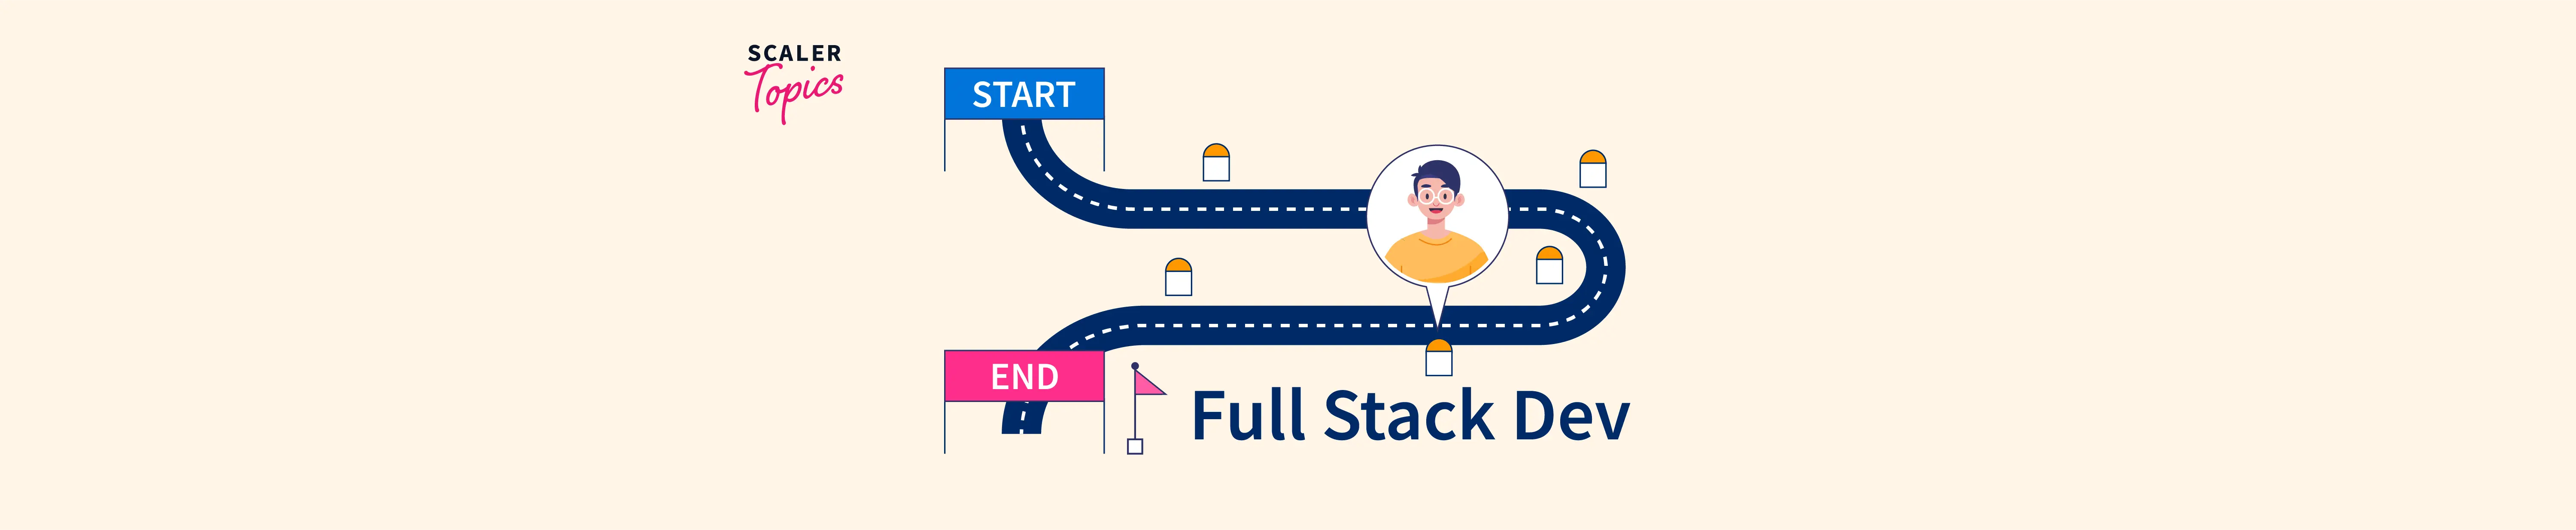 Full Stack Developer Roadmap Fi.webp